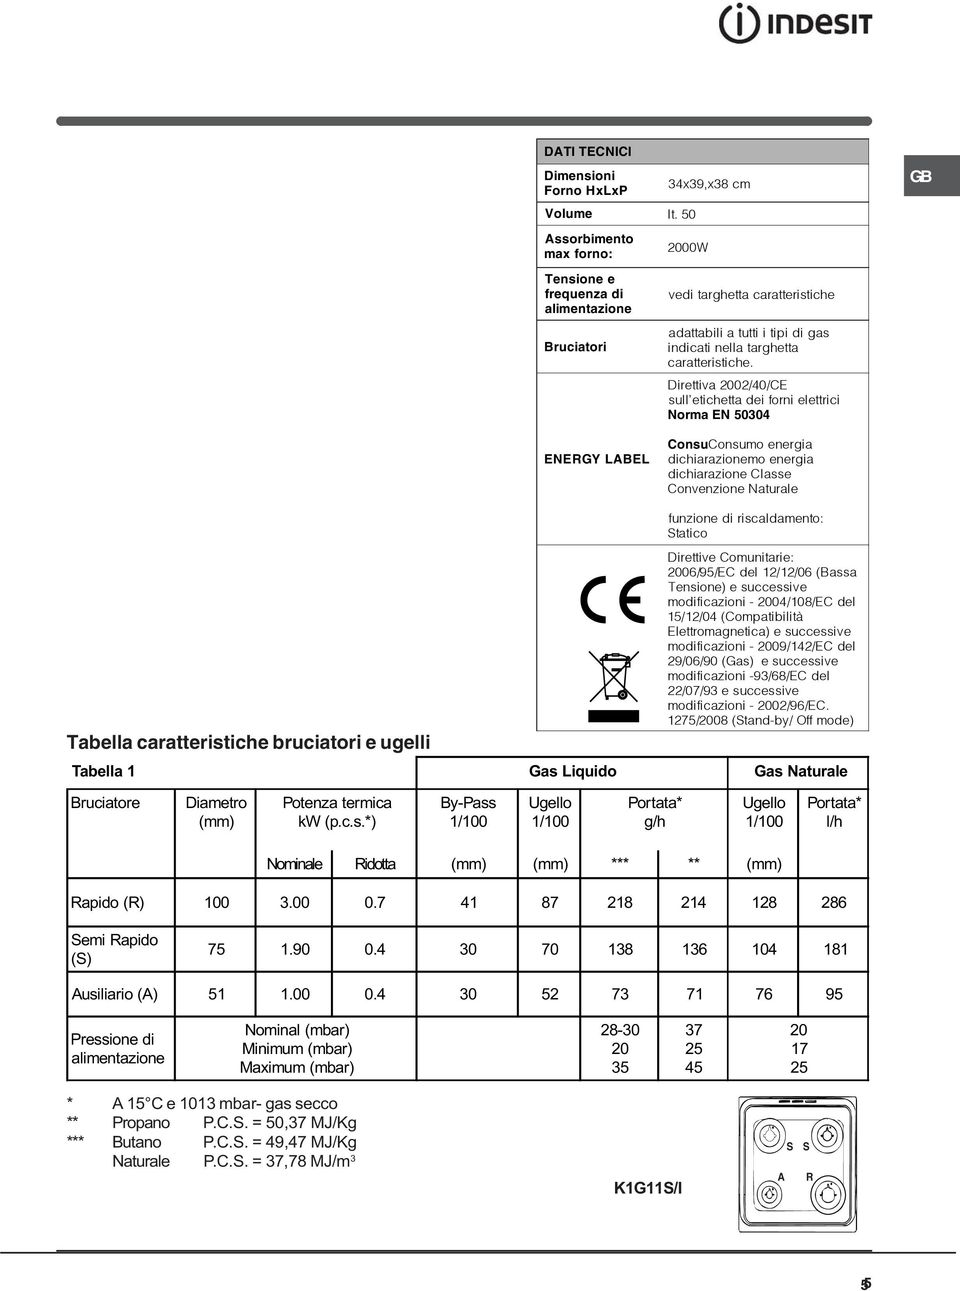 Direttiva 2002/40/CE sull etichetta dei forni elettrici Norma EN 50304 ENERGY LABEL ConsuConsumo energia dichiarazionemo energia dichiarazione Classe Convenzione Naturale Tabella caratteristiche